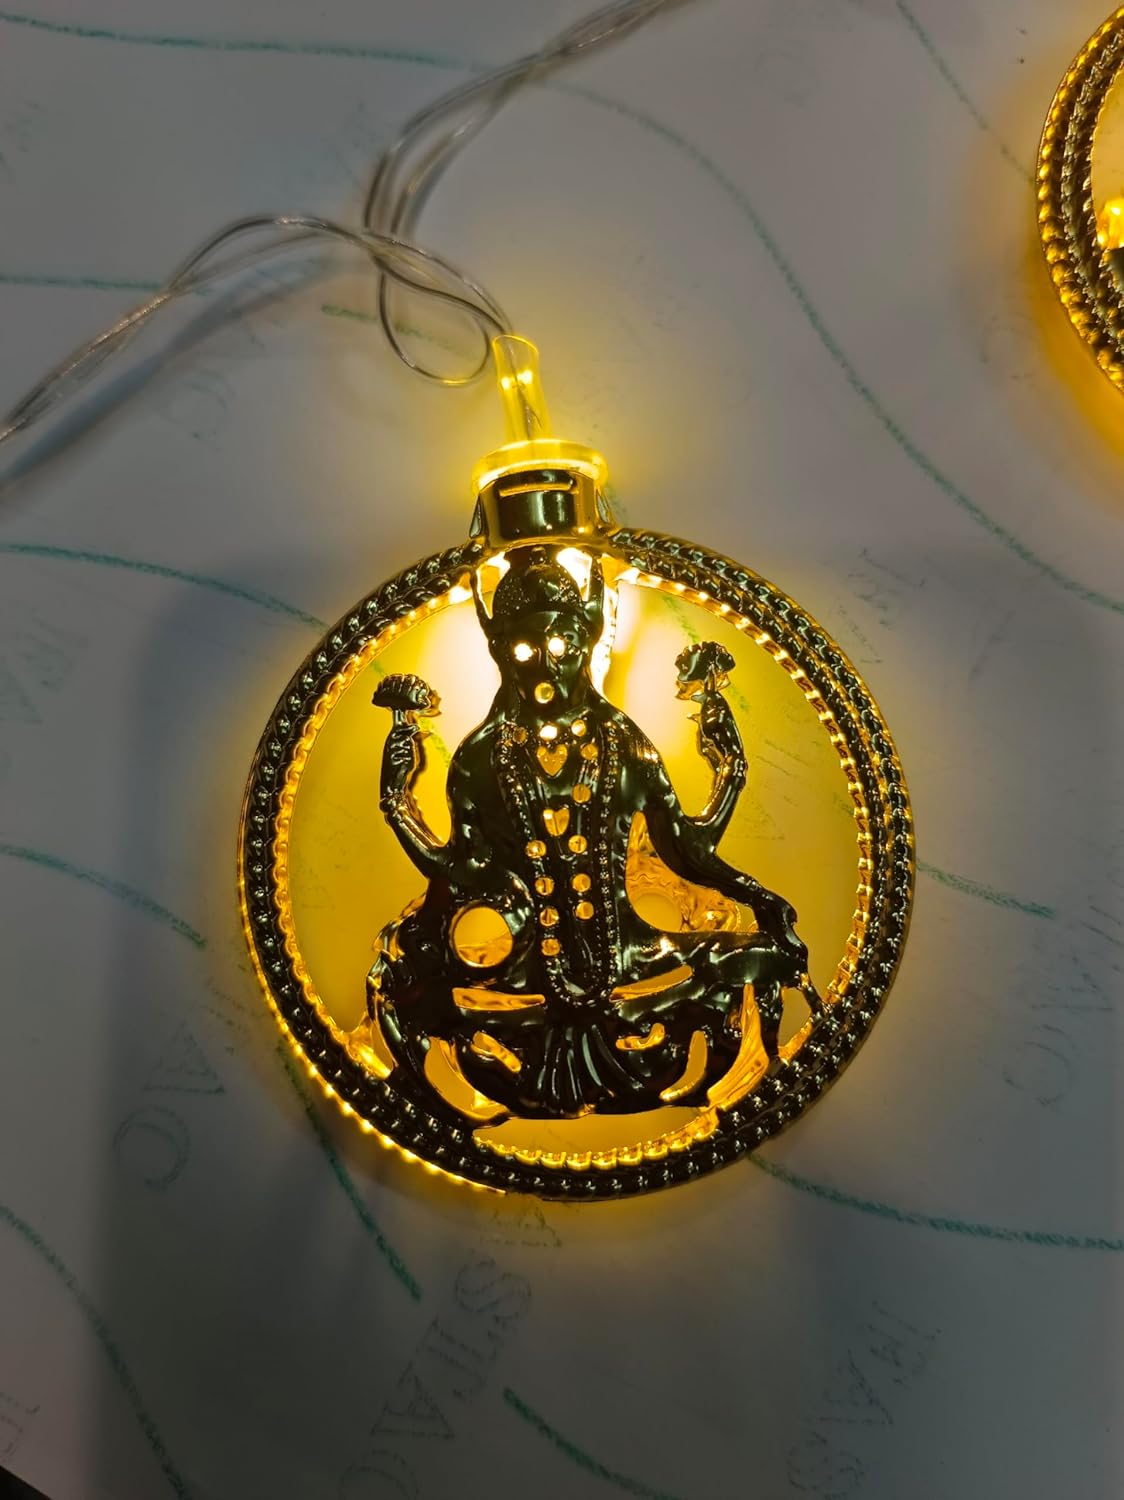 Laxmi ji Metal Light, Diwali puja Decoration Light, Diwali Gift laxmi ji Metal Light